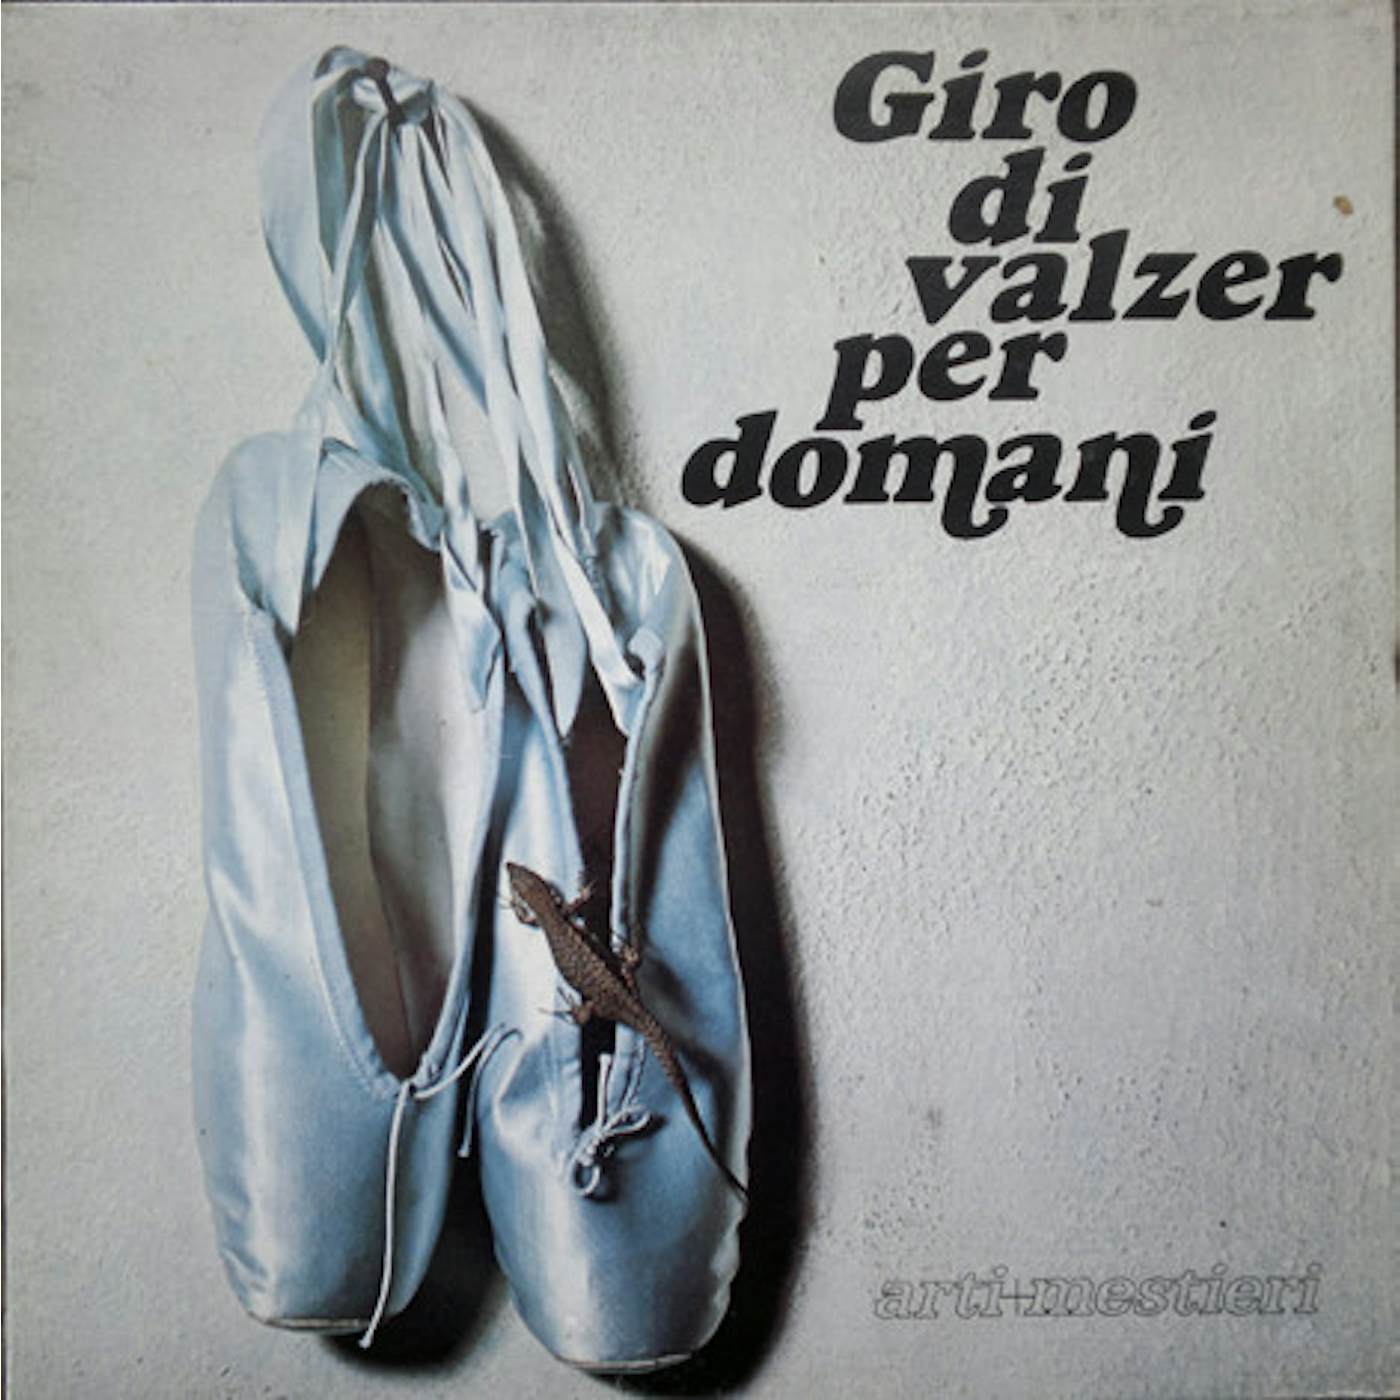 Arti & Mestieri GIRO DI VALZER PER DOMANI Vinyl Record - Italy Release